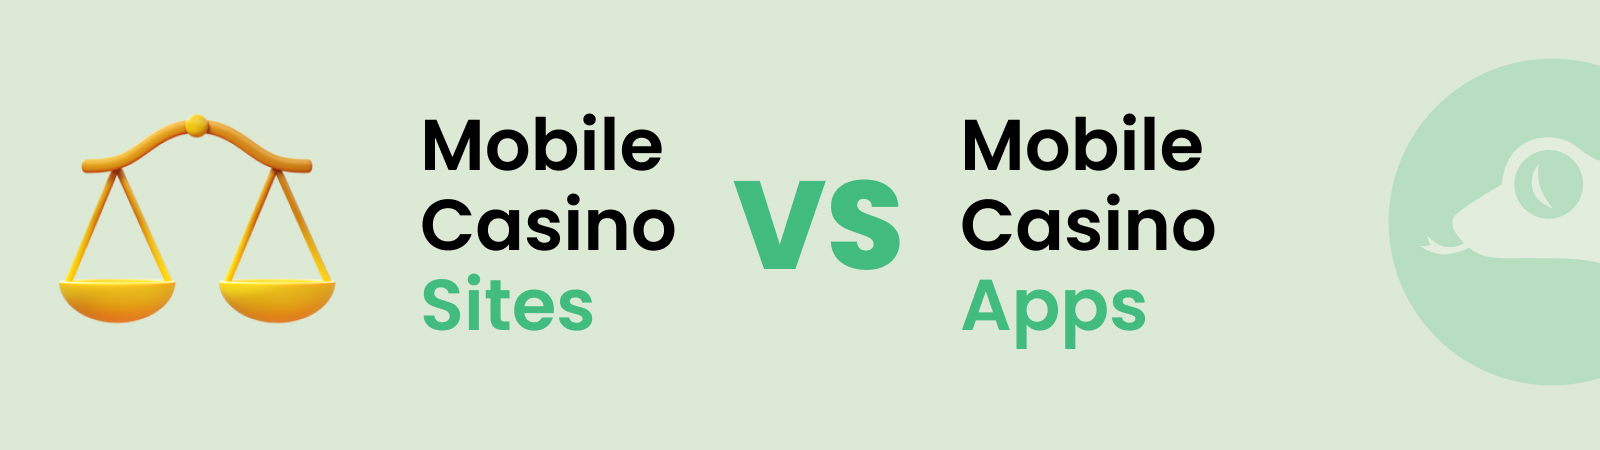 mobile casino sites vs mobile casino apps